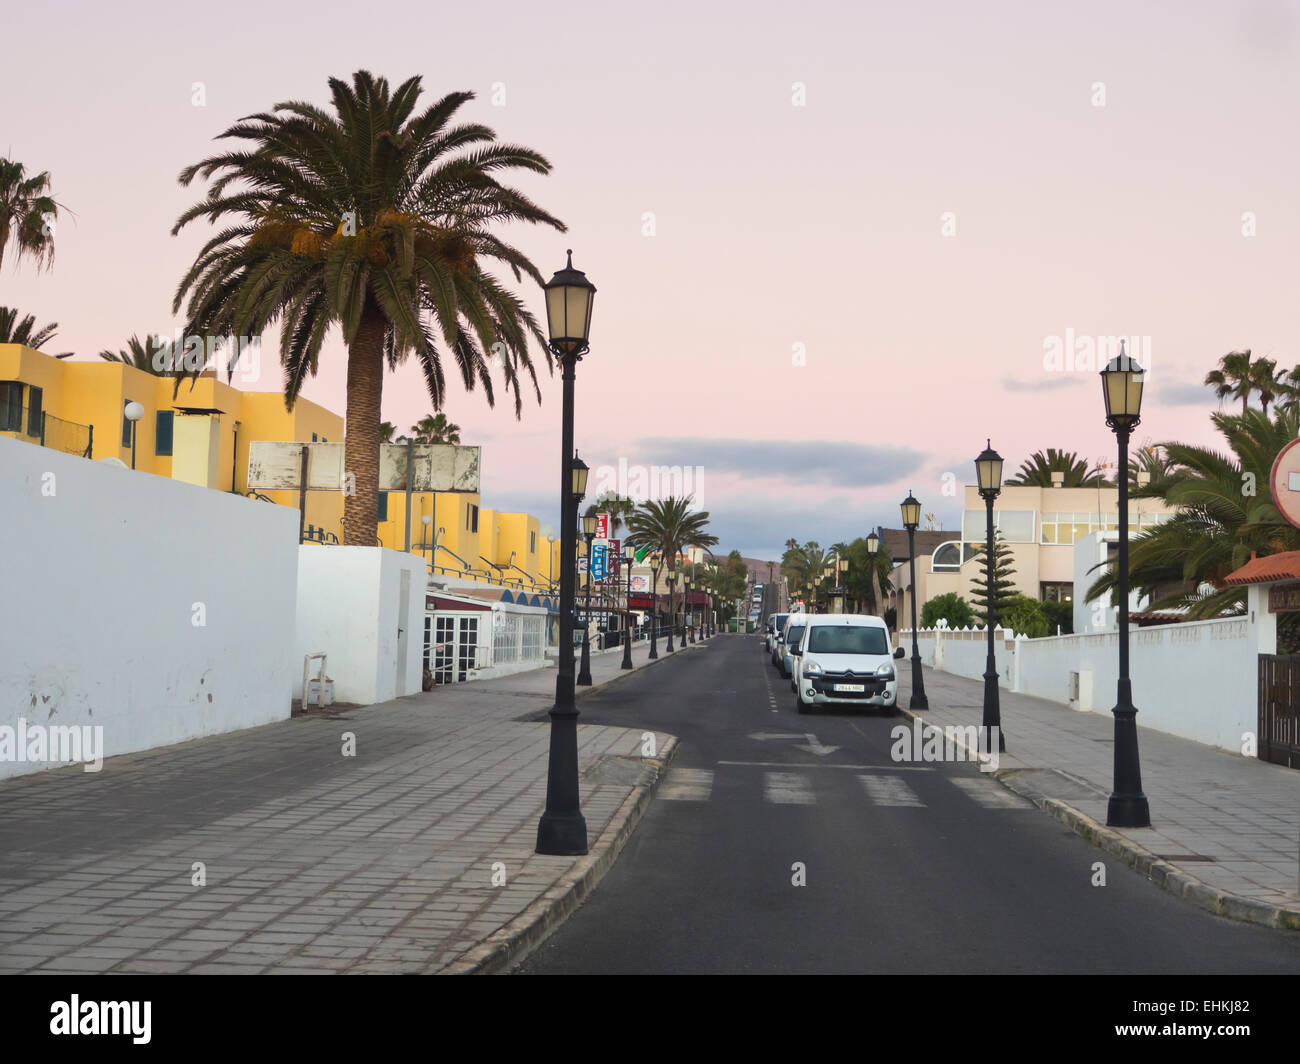 Strada tranquilla in zona turistica di Corralejo, Fuerteventura isole Canarie appartamento alberghi, parcheggi spazio, la mattina presto Foto Stock